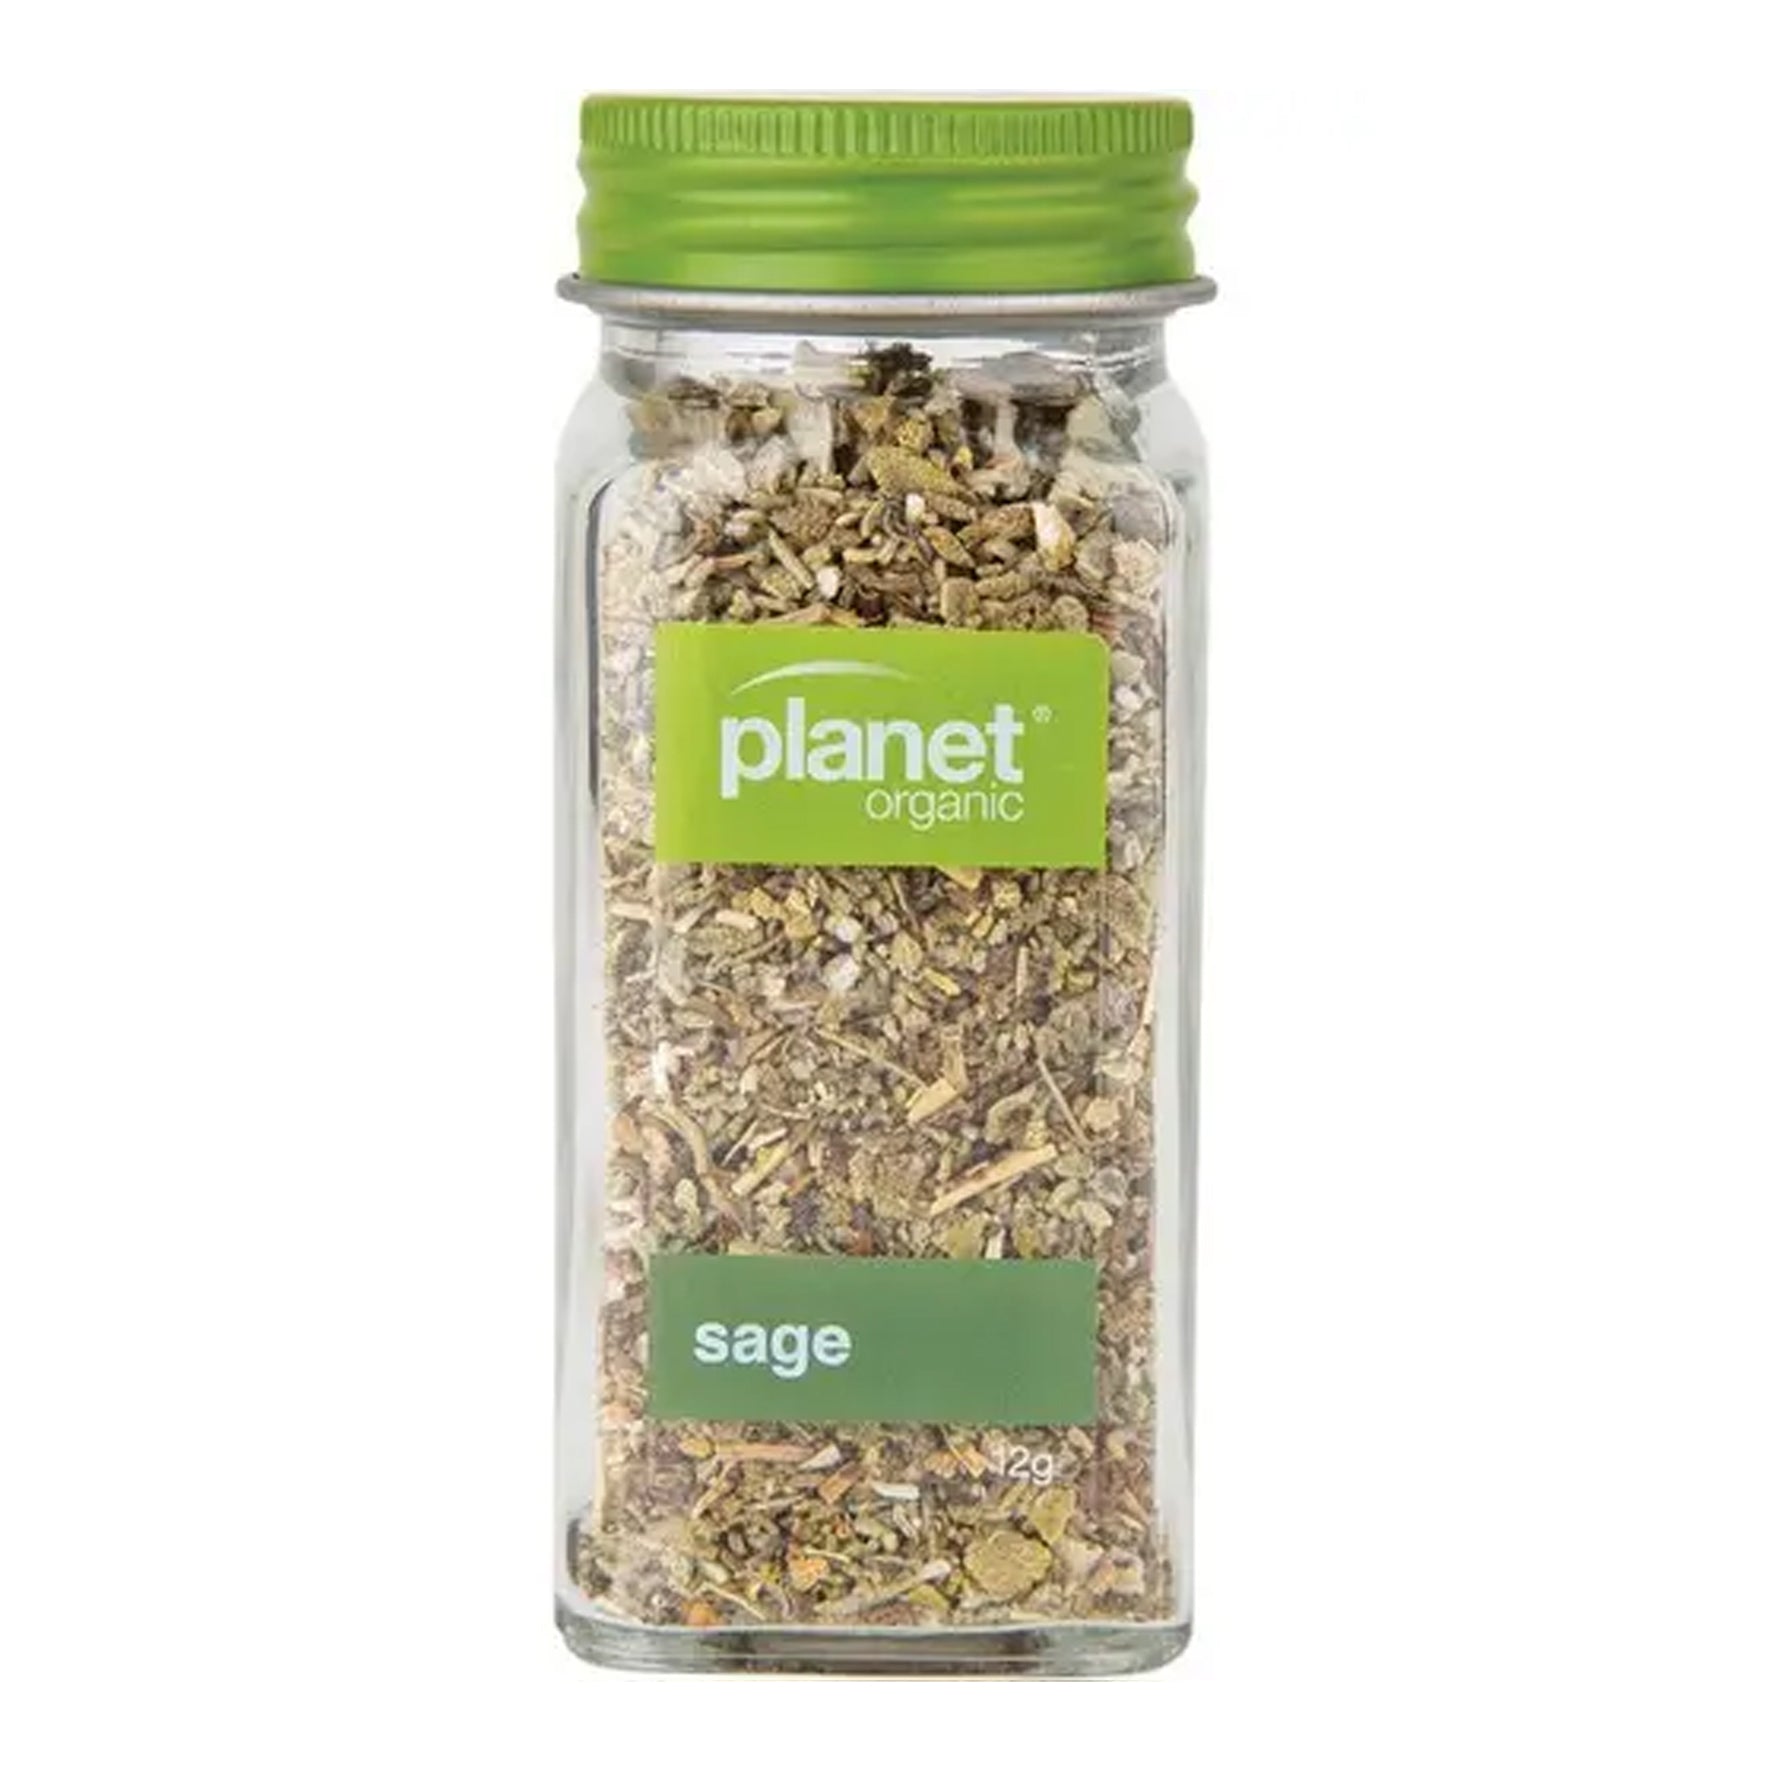 Planet Organic Herbs - Sage 12g